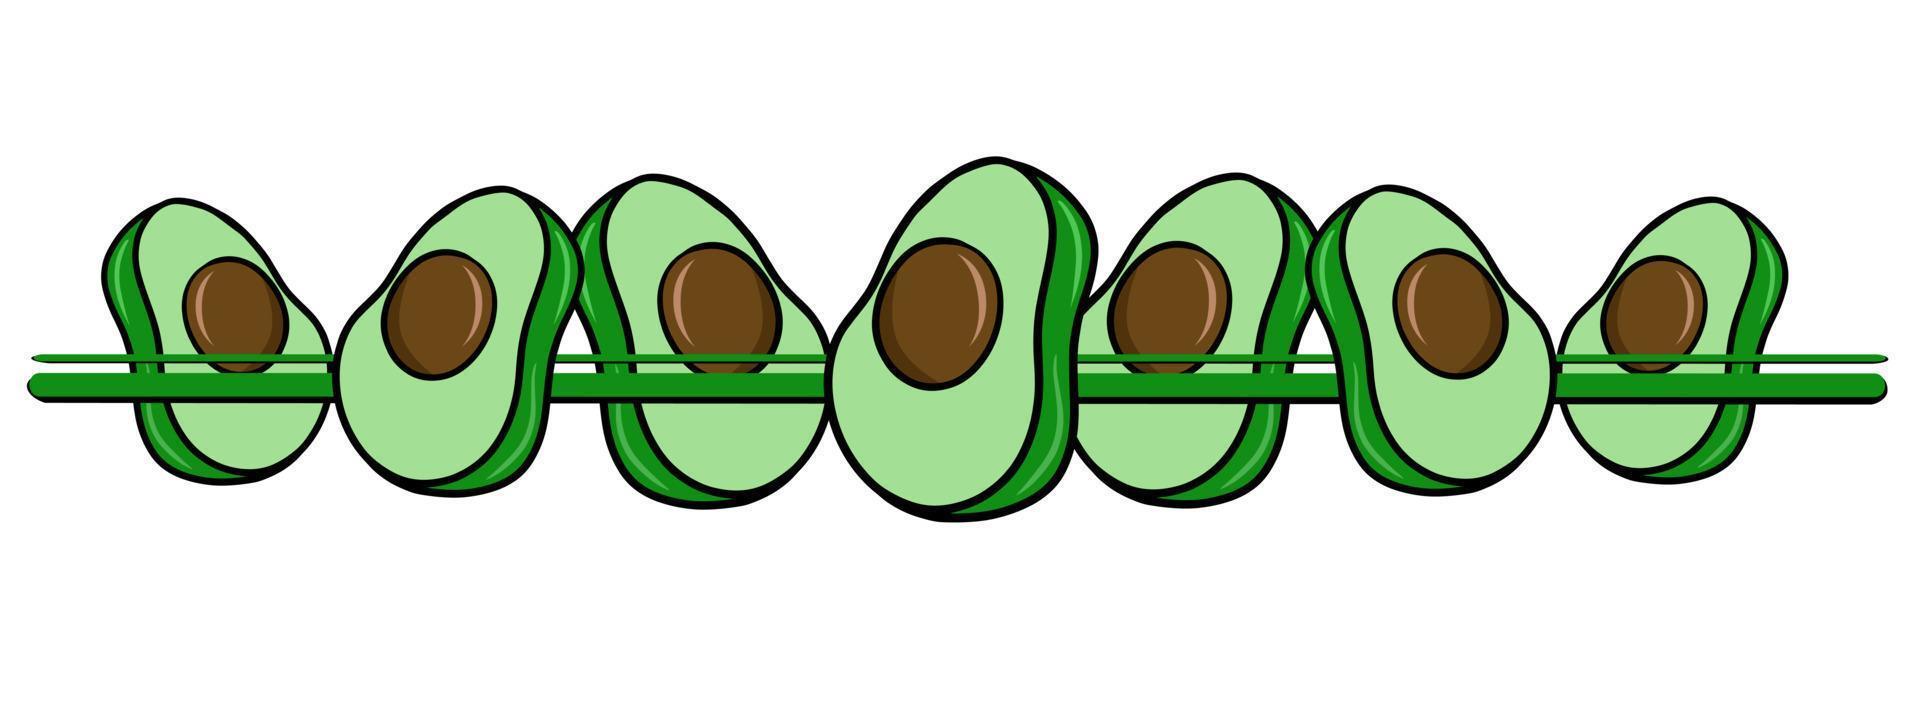 borde horizontal, borde, mitades verdes de frutos de aguacate, ilustración vectorial en estilo de dibujos animados sobre un fondo blanco vector